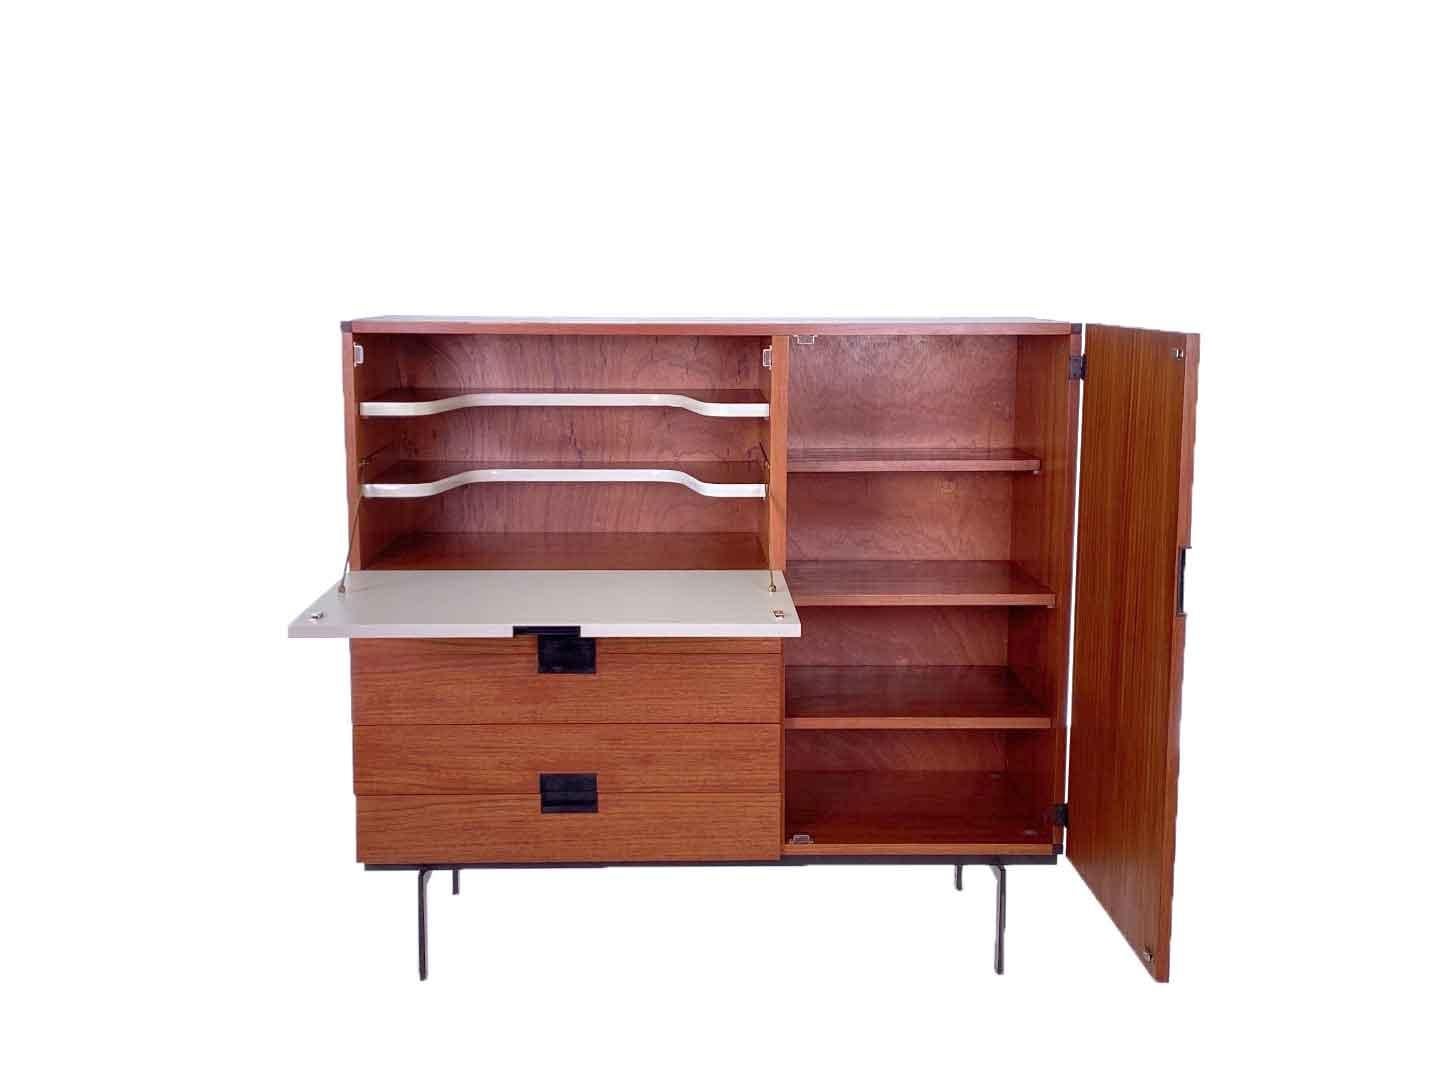 Armoire CU01 vintage particulièrement emblématique de Cees Braakman, produite par Pastoe en 1958. Ce meuble, qui appartient à la série japonaise de Pastoe, est un véritable classique du design néerlandais. L'armoire comporte quatre tiroirs, une